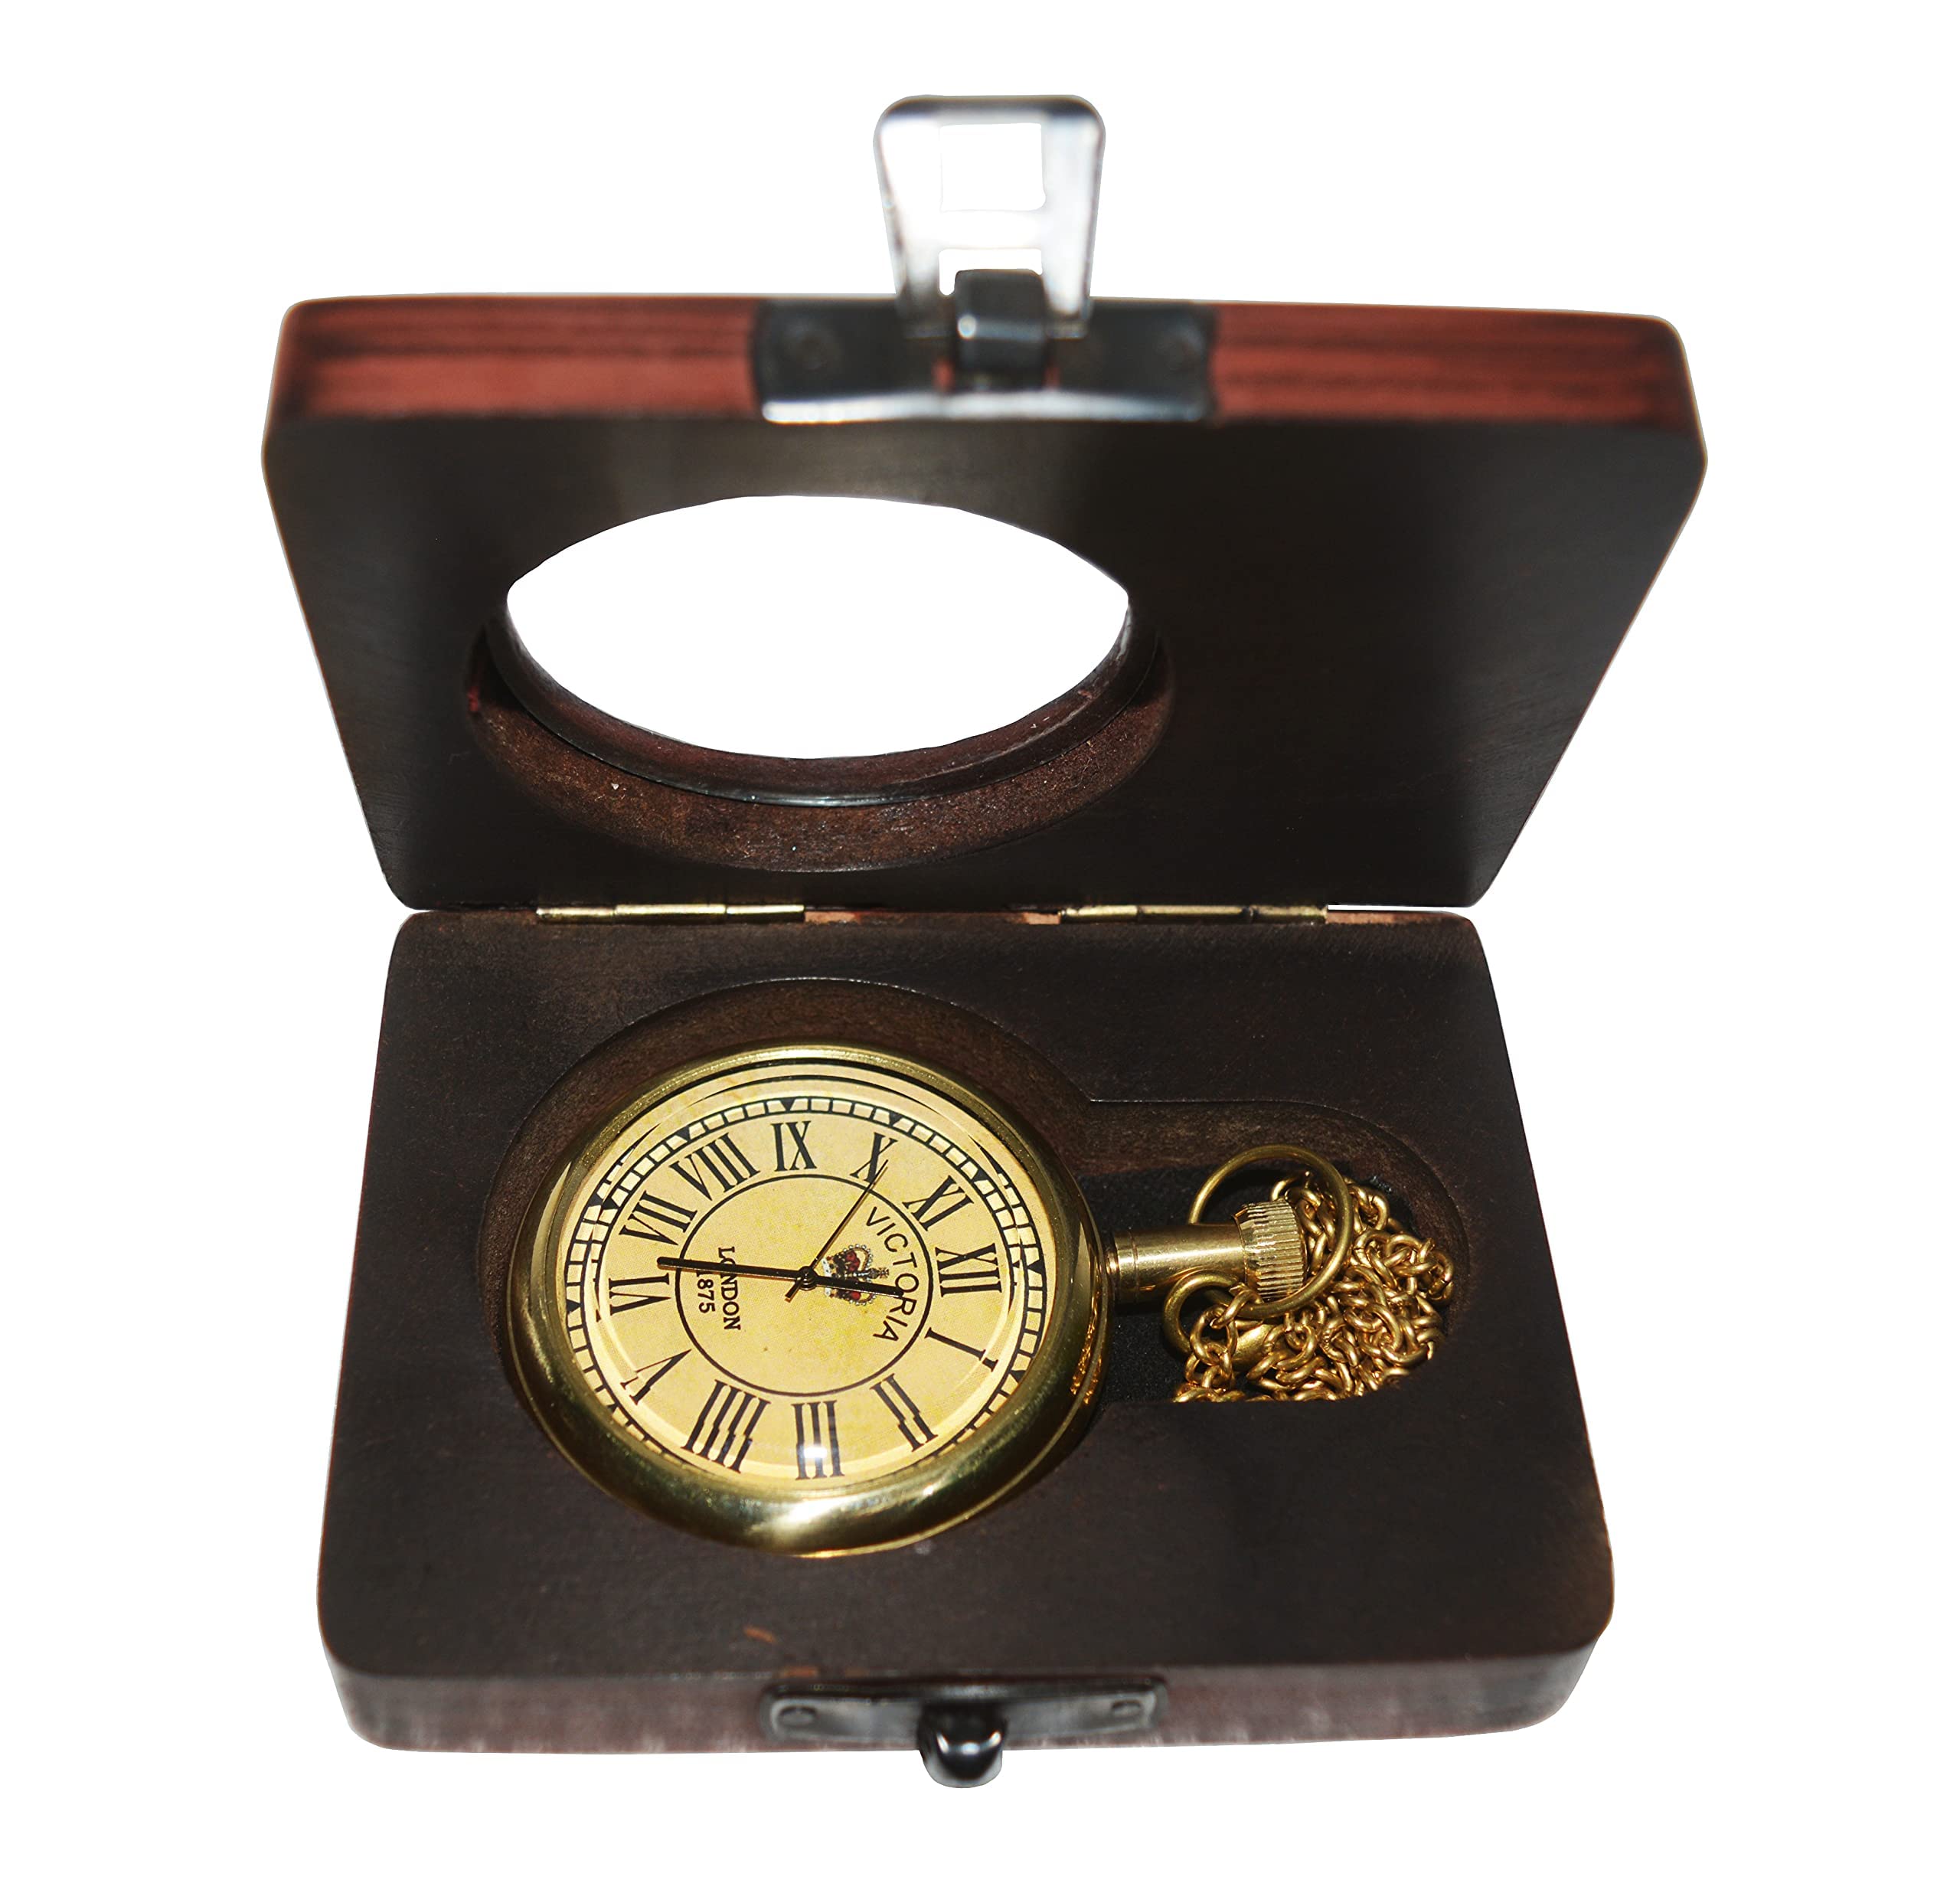 Hassanhandicrafts Antique Vintage Maritime Victoria London Brass Pocket Watch with Wooden Box